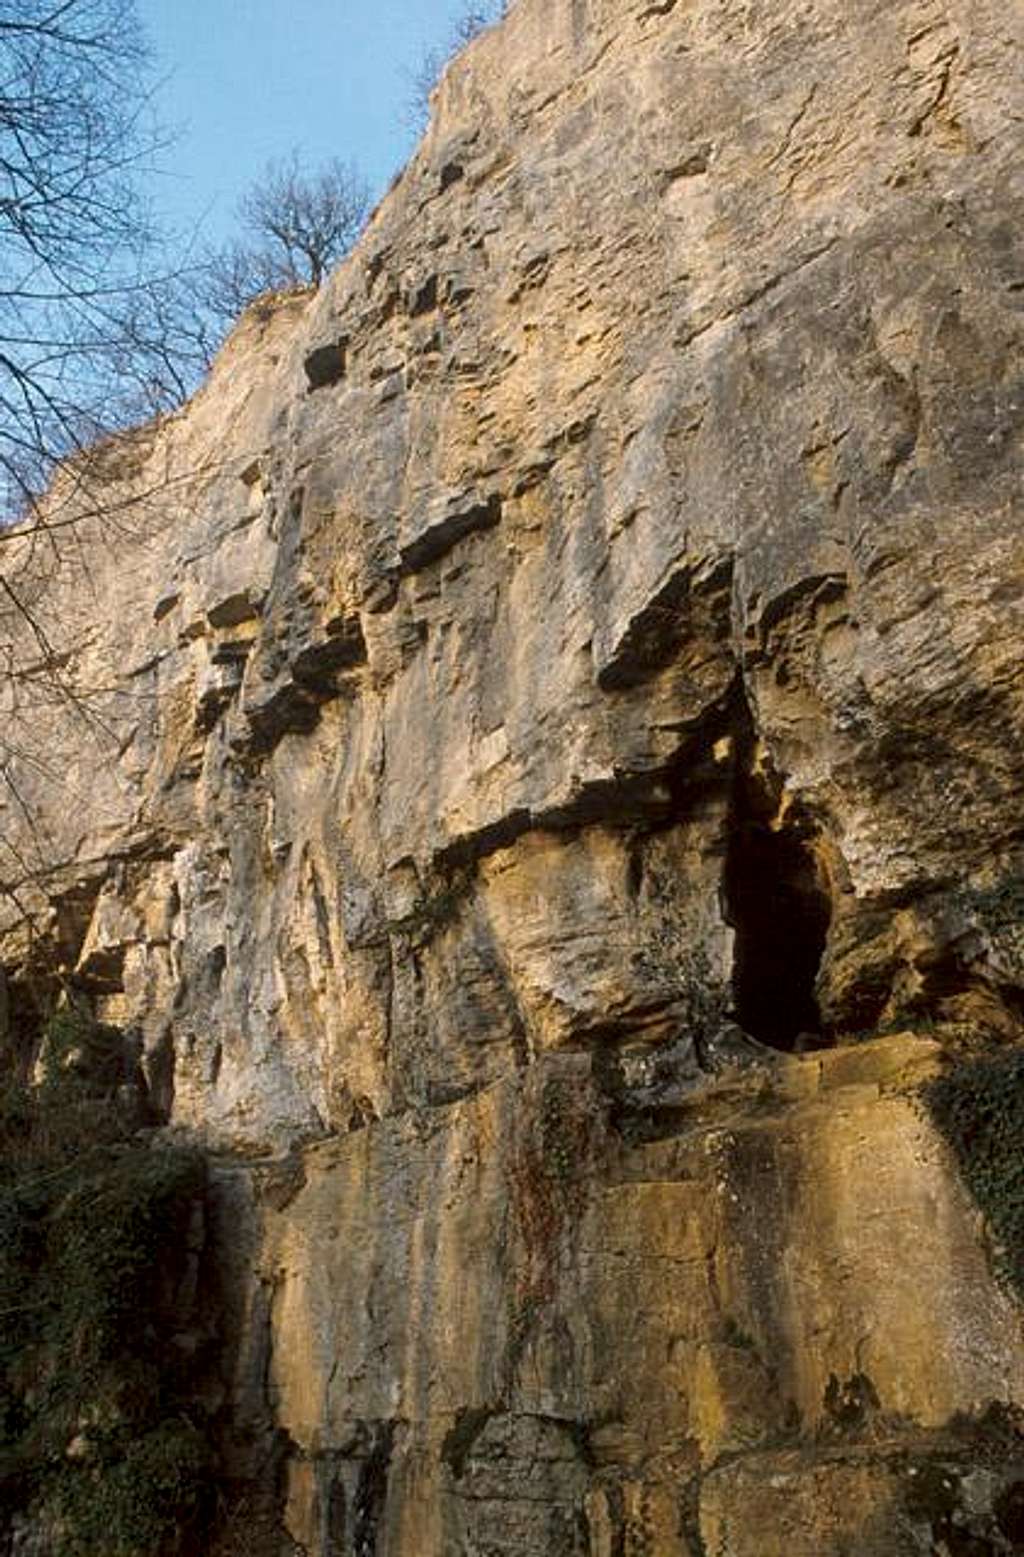 Hauteroche cliff